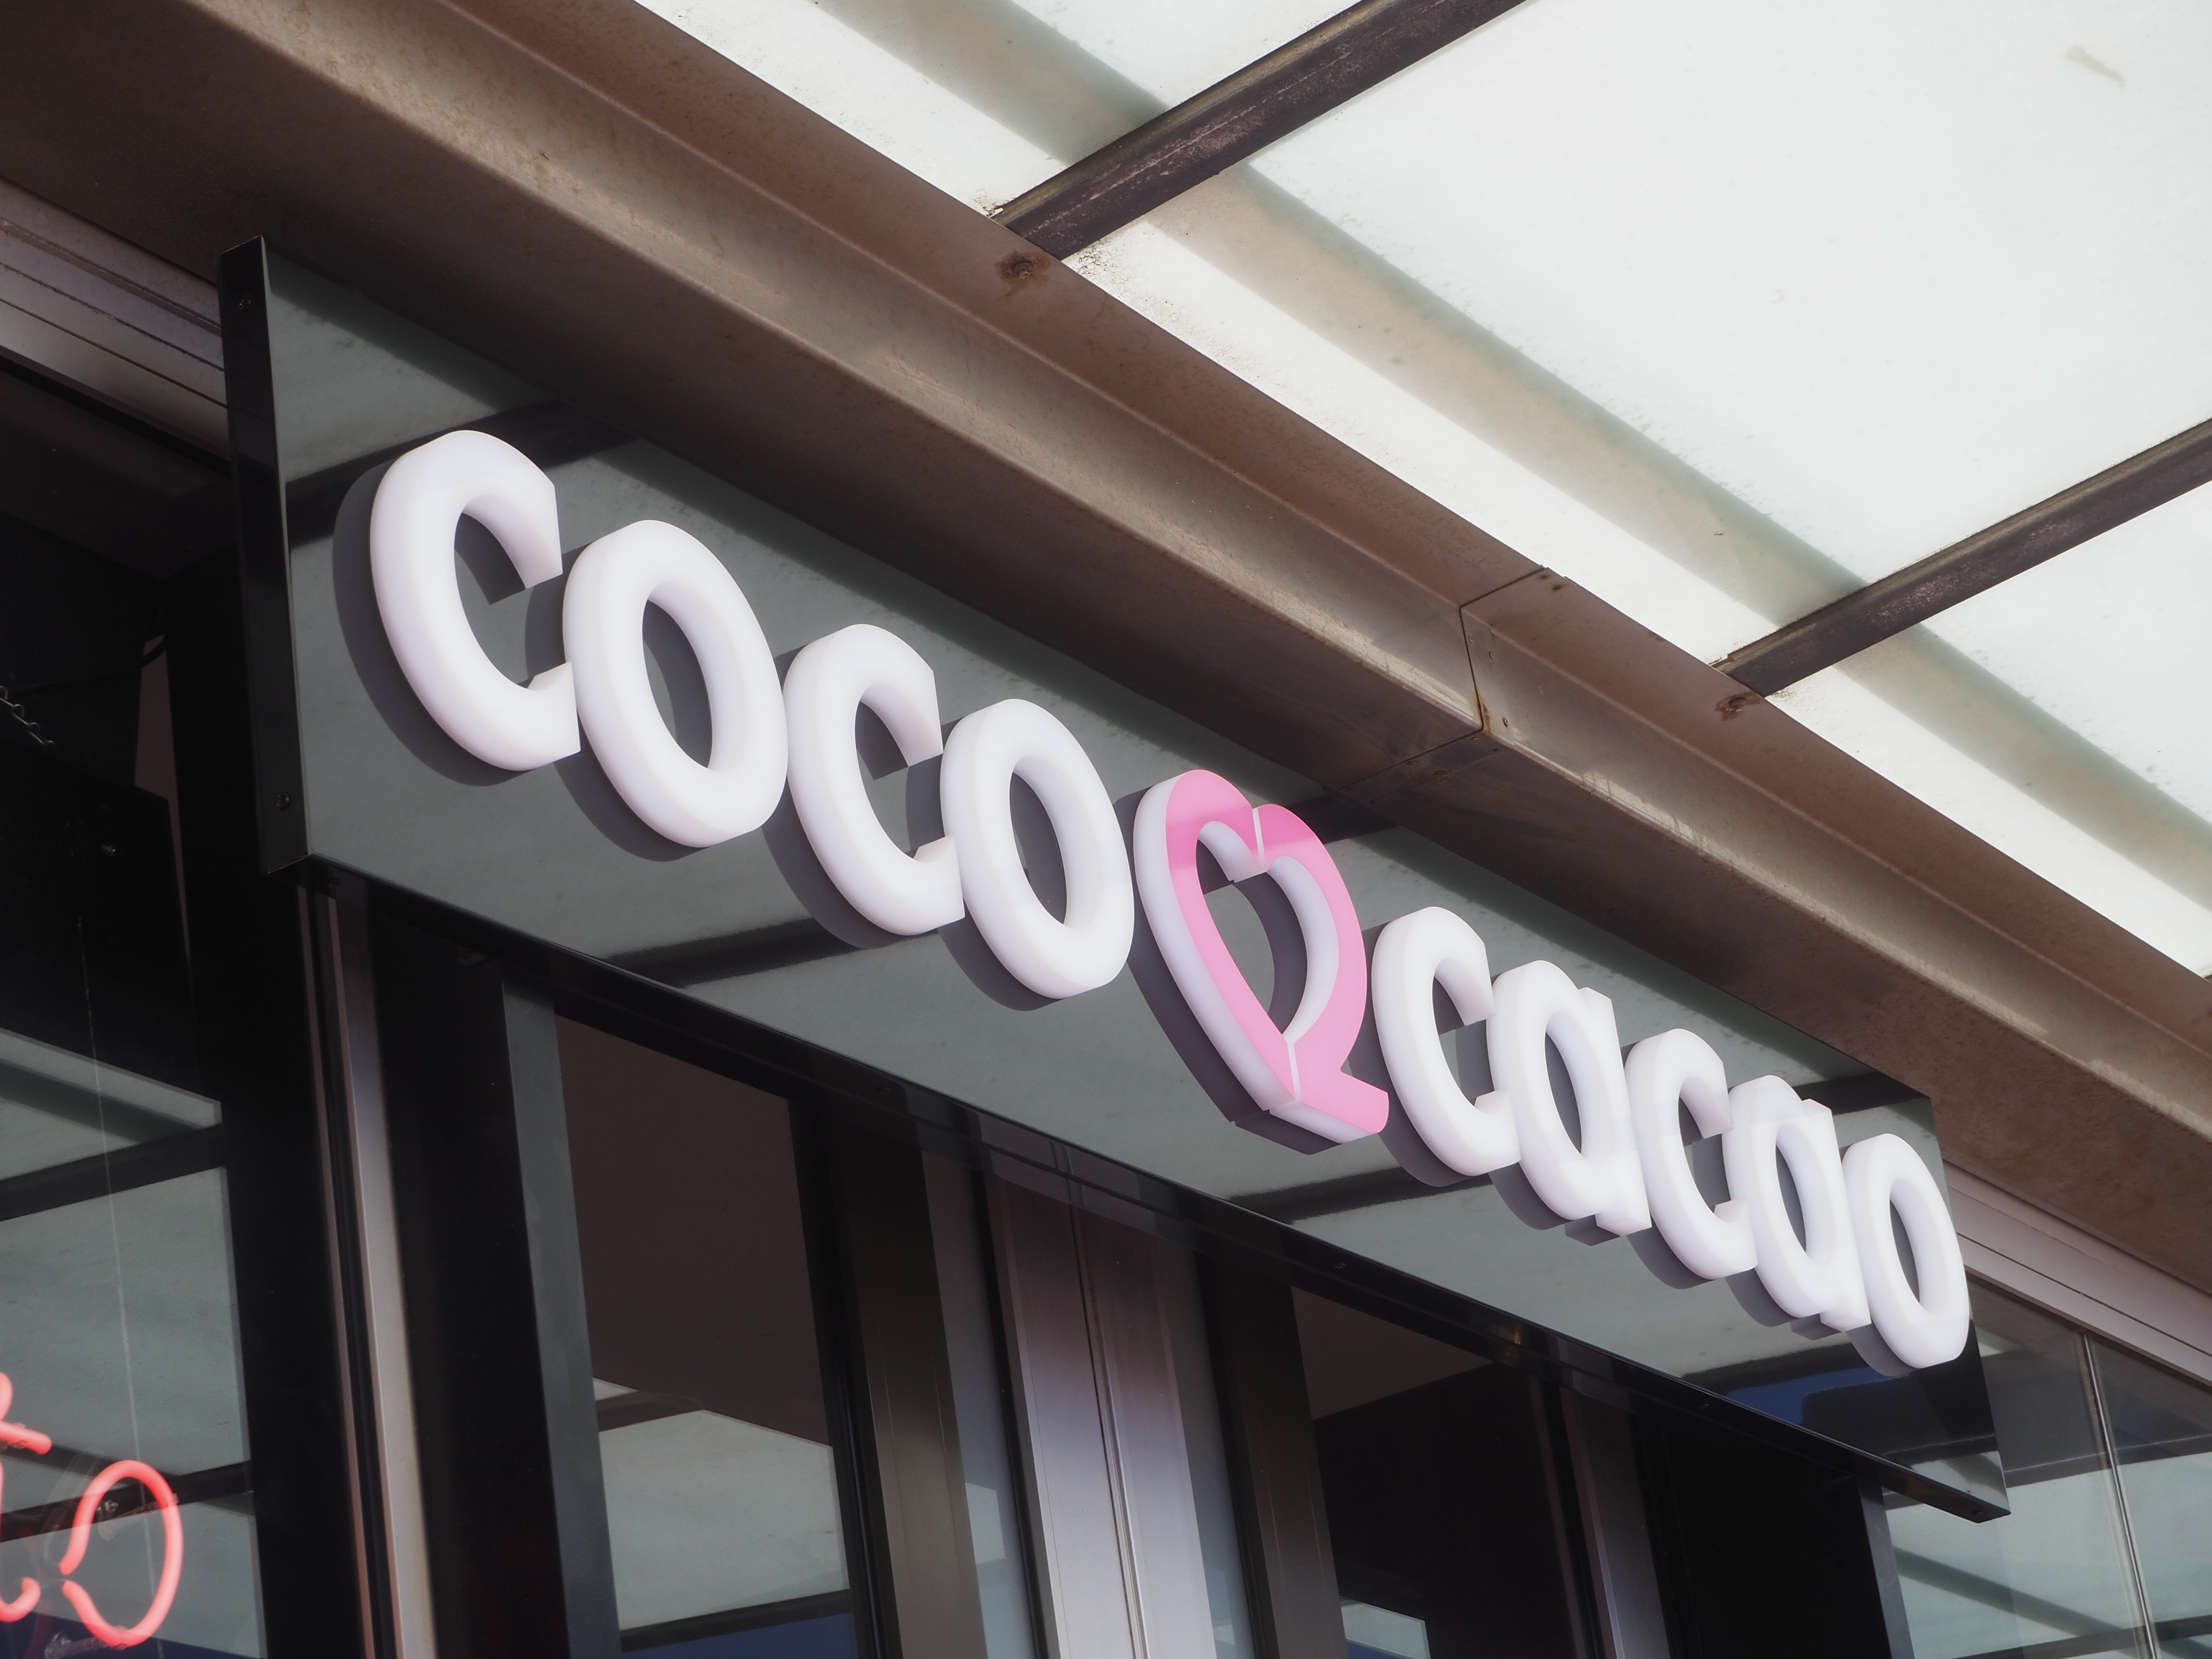 Coco Cocao sign